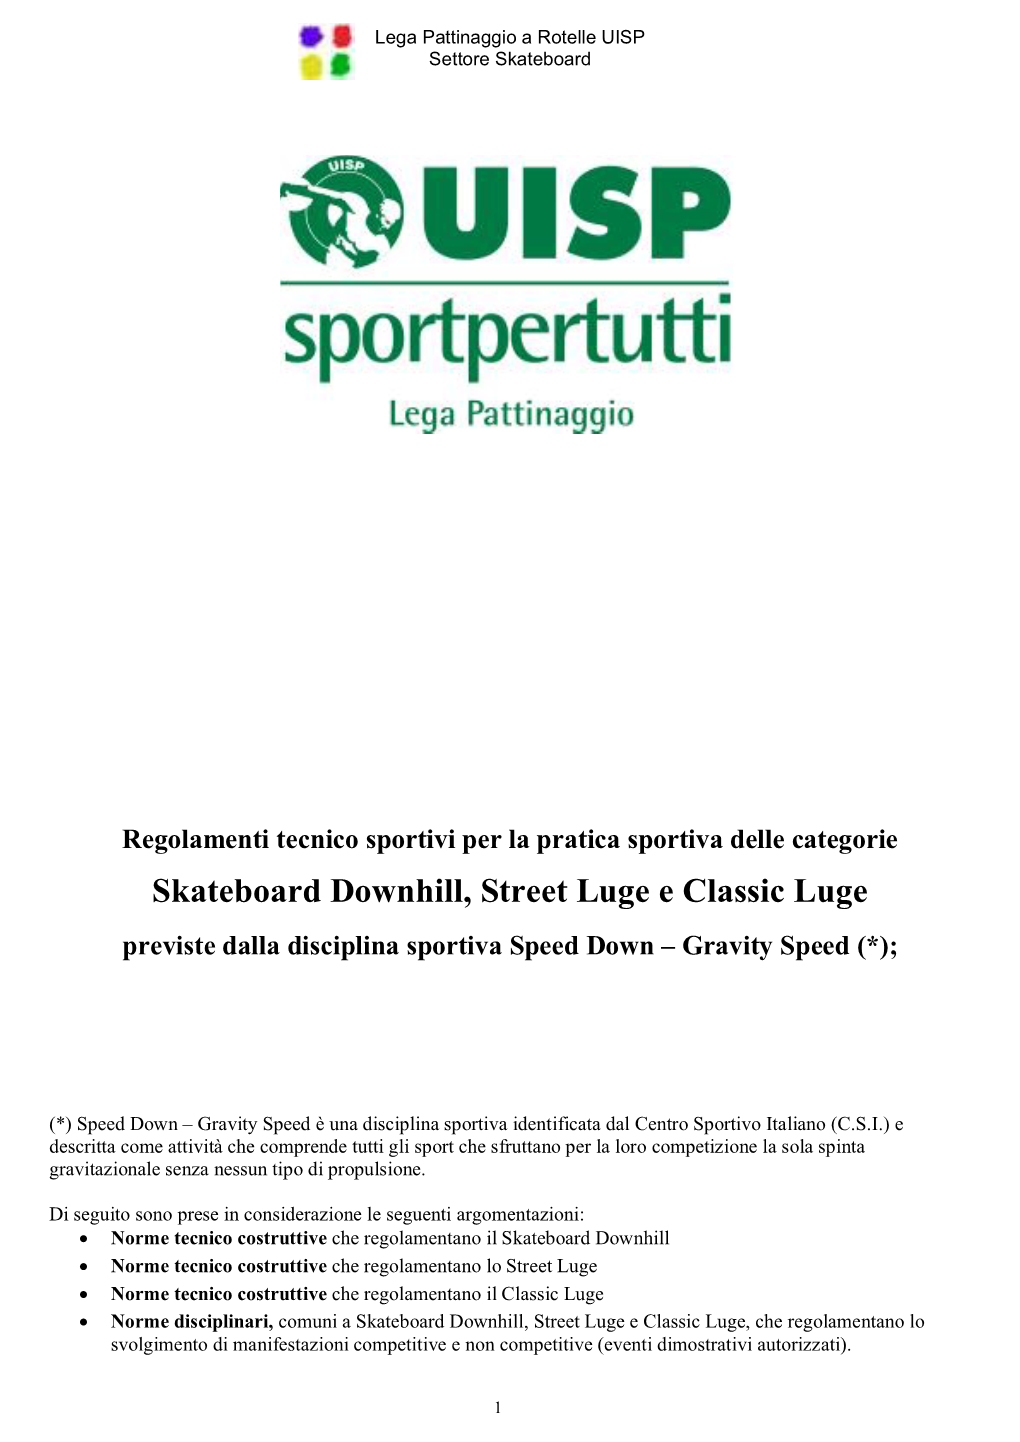 Skateboard Downhill, Street Luge E Classic Luge Previste Dalla Disciplina Sportiva Speed Down – Gravity Speed (*);